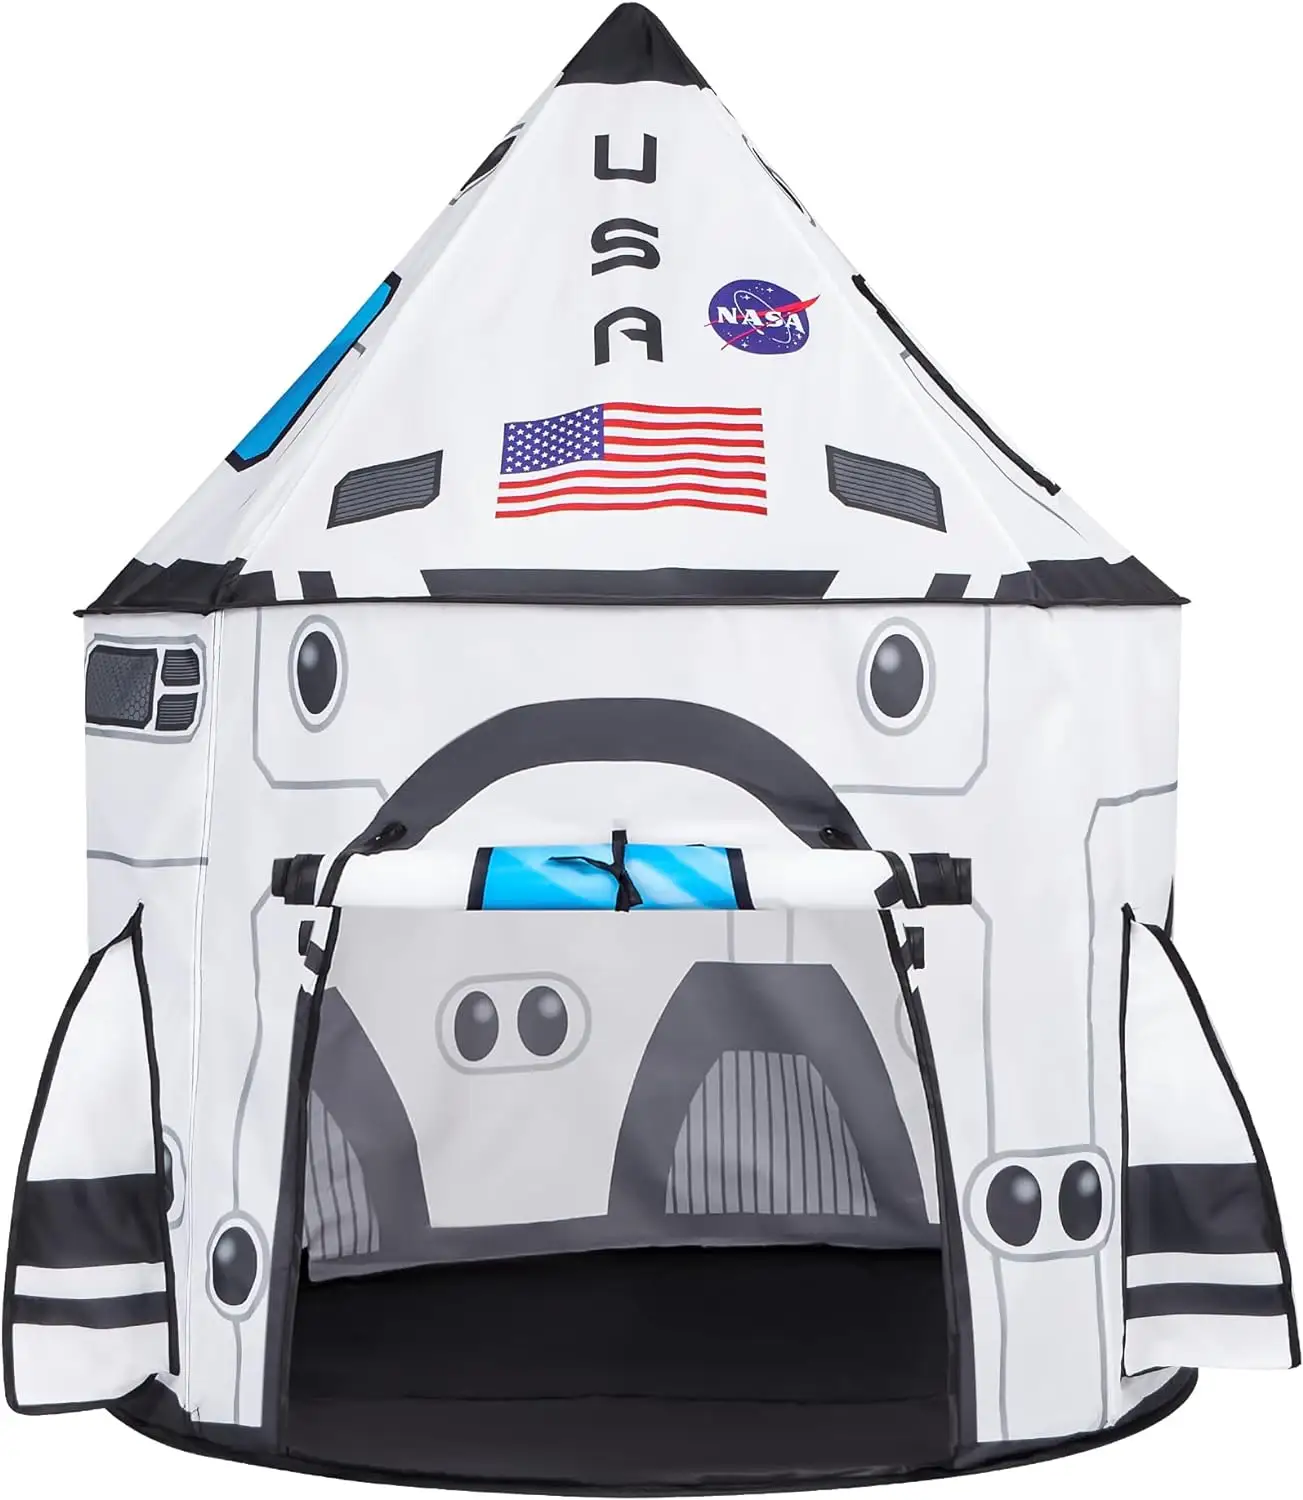 Barraca de brincar pop-up para crianças, conjunto de barracas de brincar para espaçonaves, interior e exterior, navio espacial